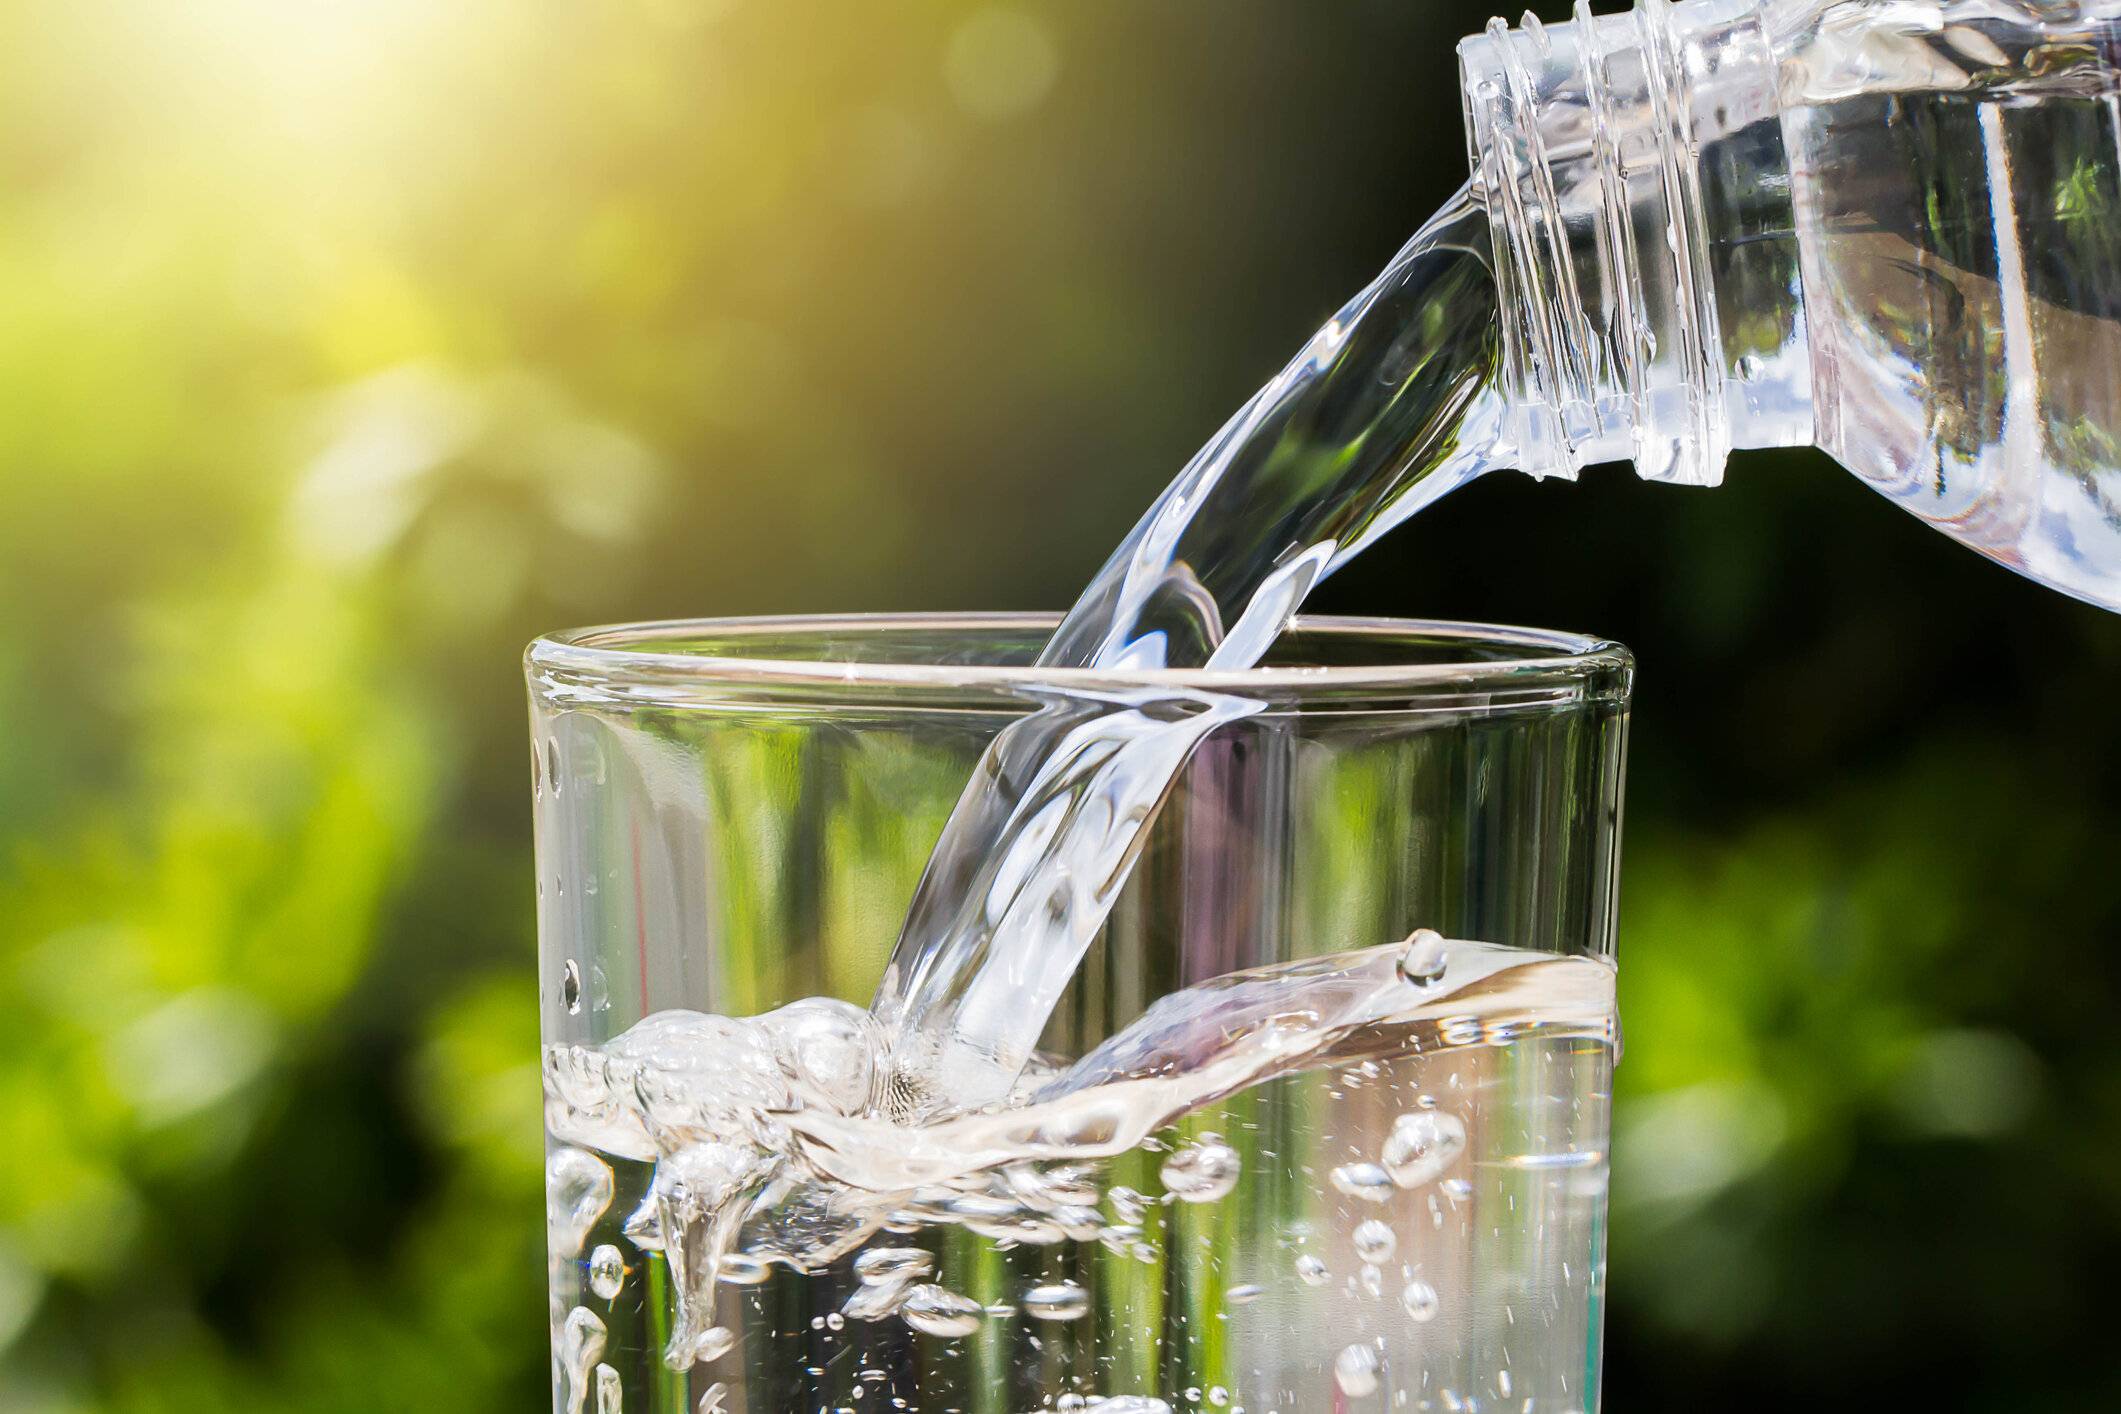 Как выбрать качественную питьевую воду?